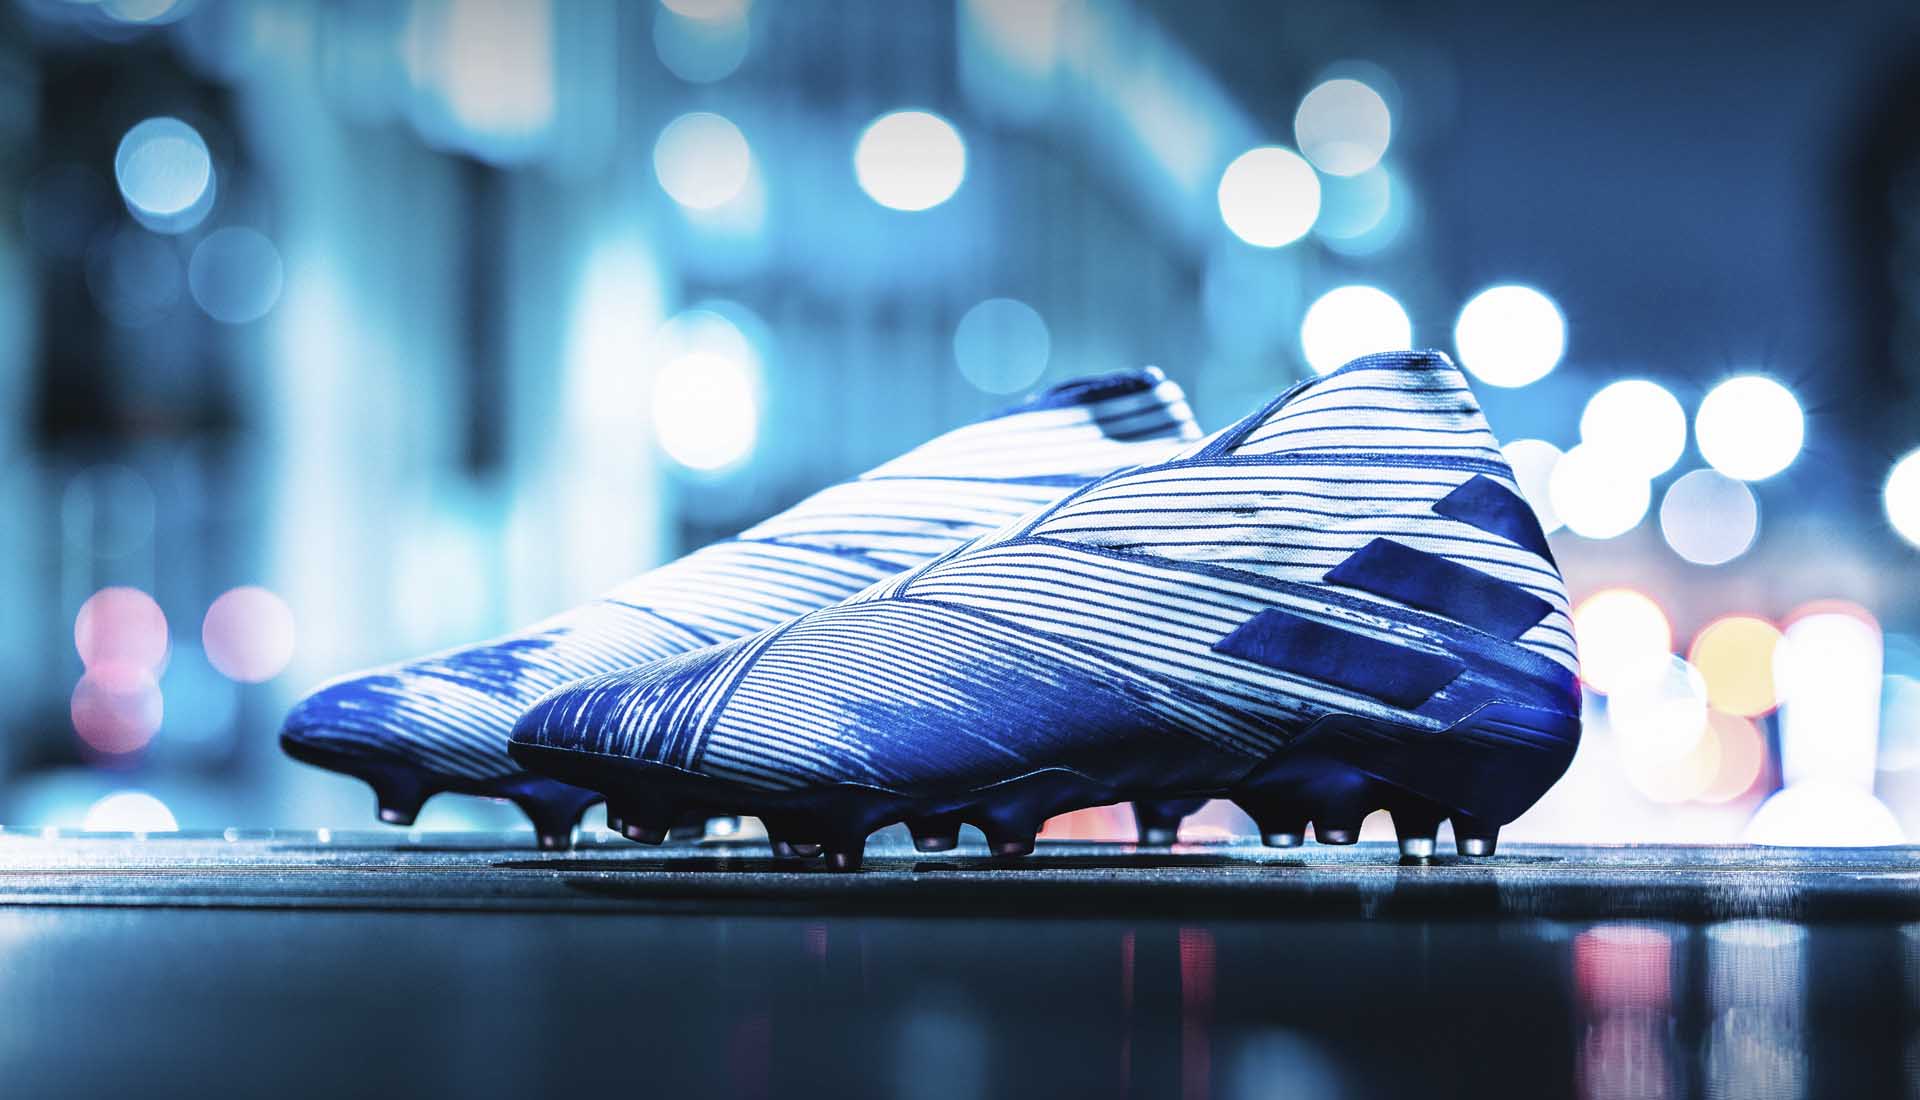 Roberto Firmino lựa chọn dòng giày đá bóng không dây Adidas Nemeziz 19+ đẹp mắt